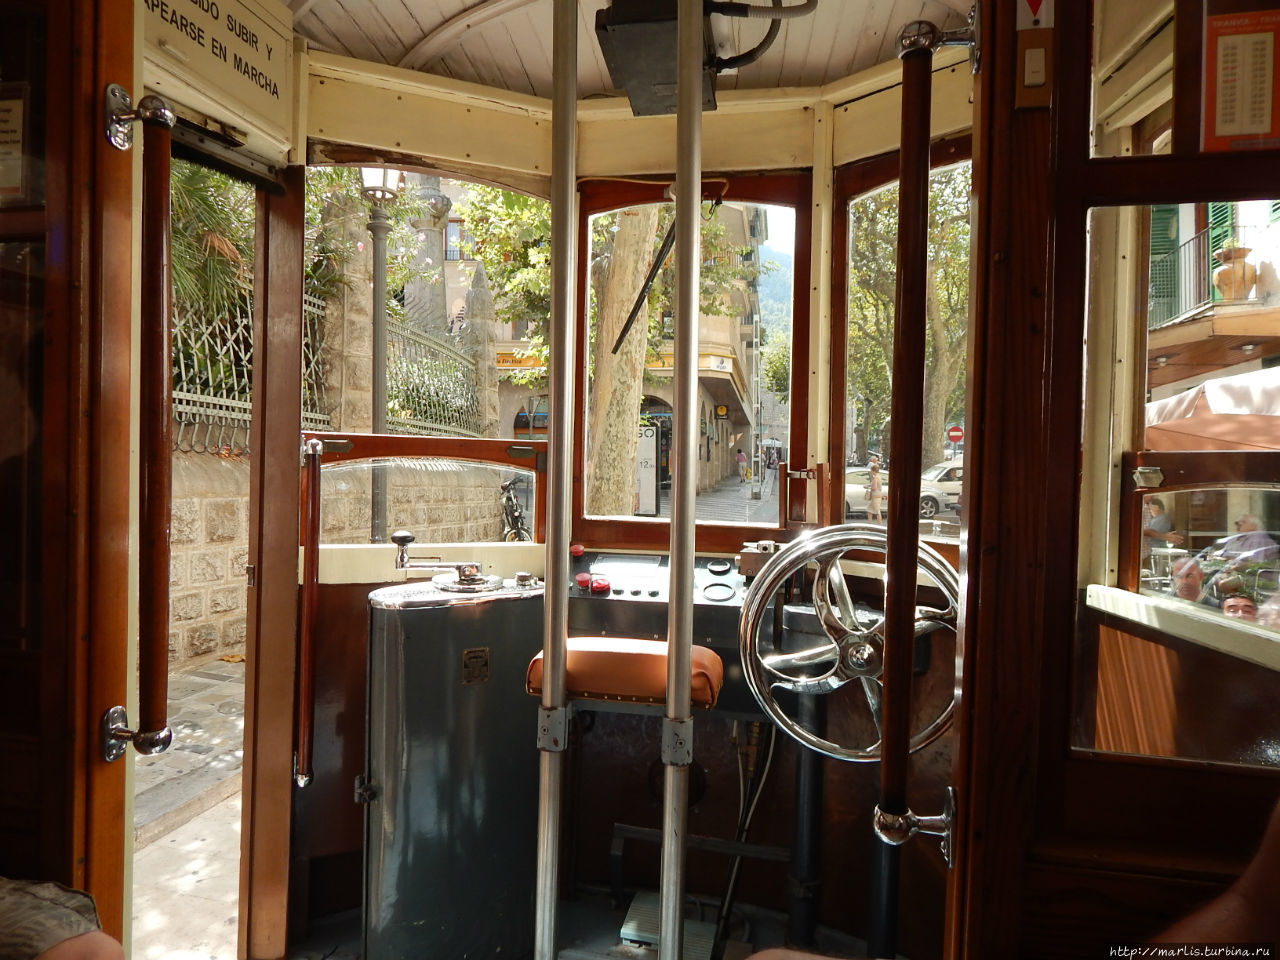 Соер. Cказка о старом трамвае Сольер, остров Майорка, Испания